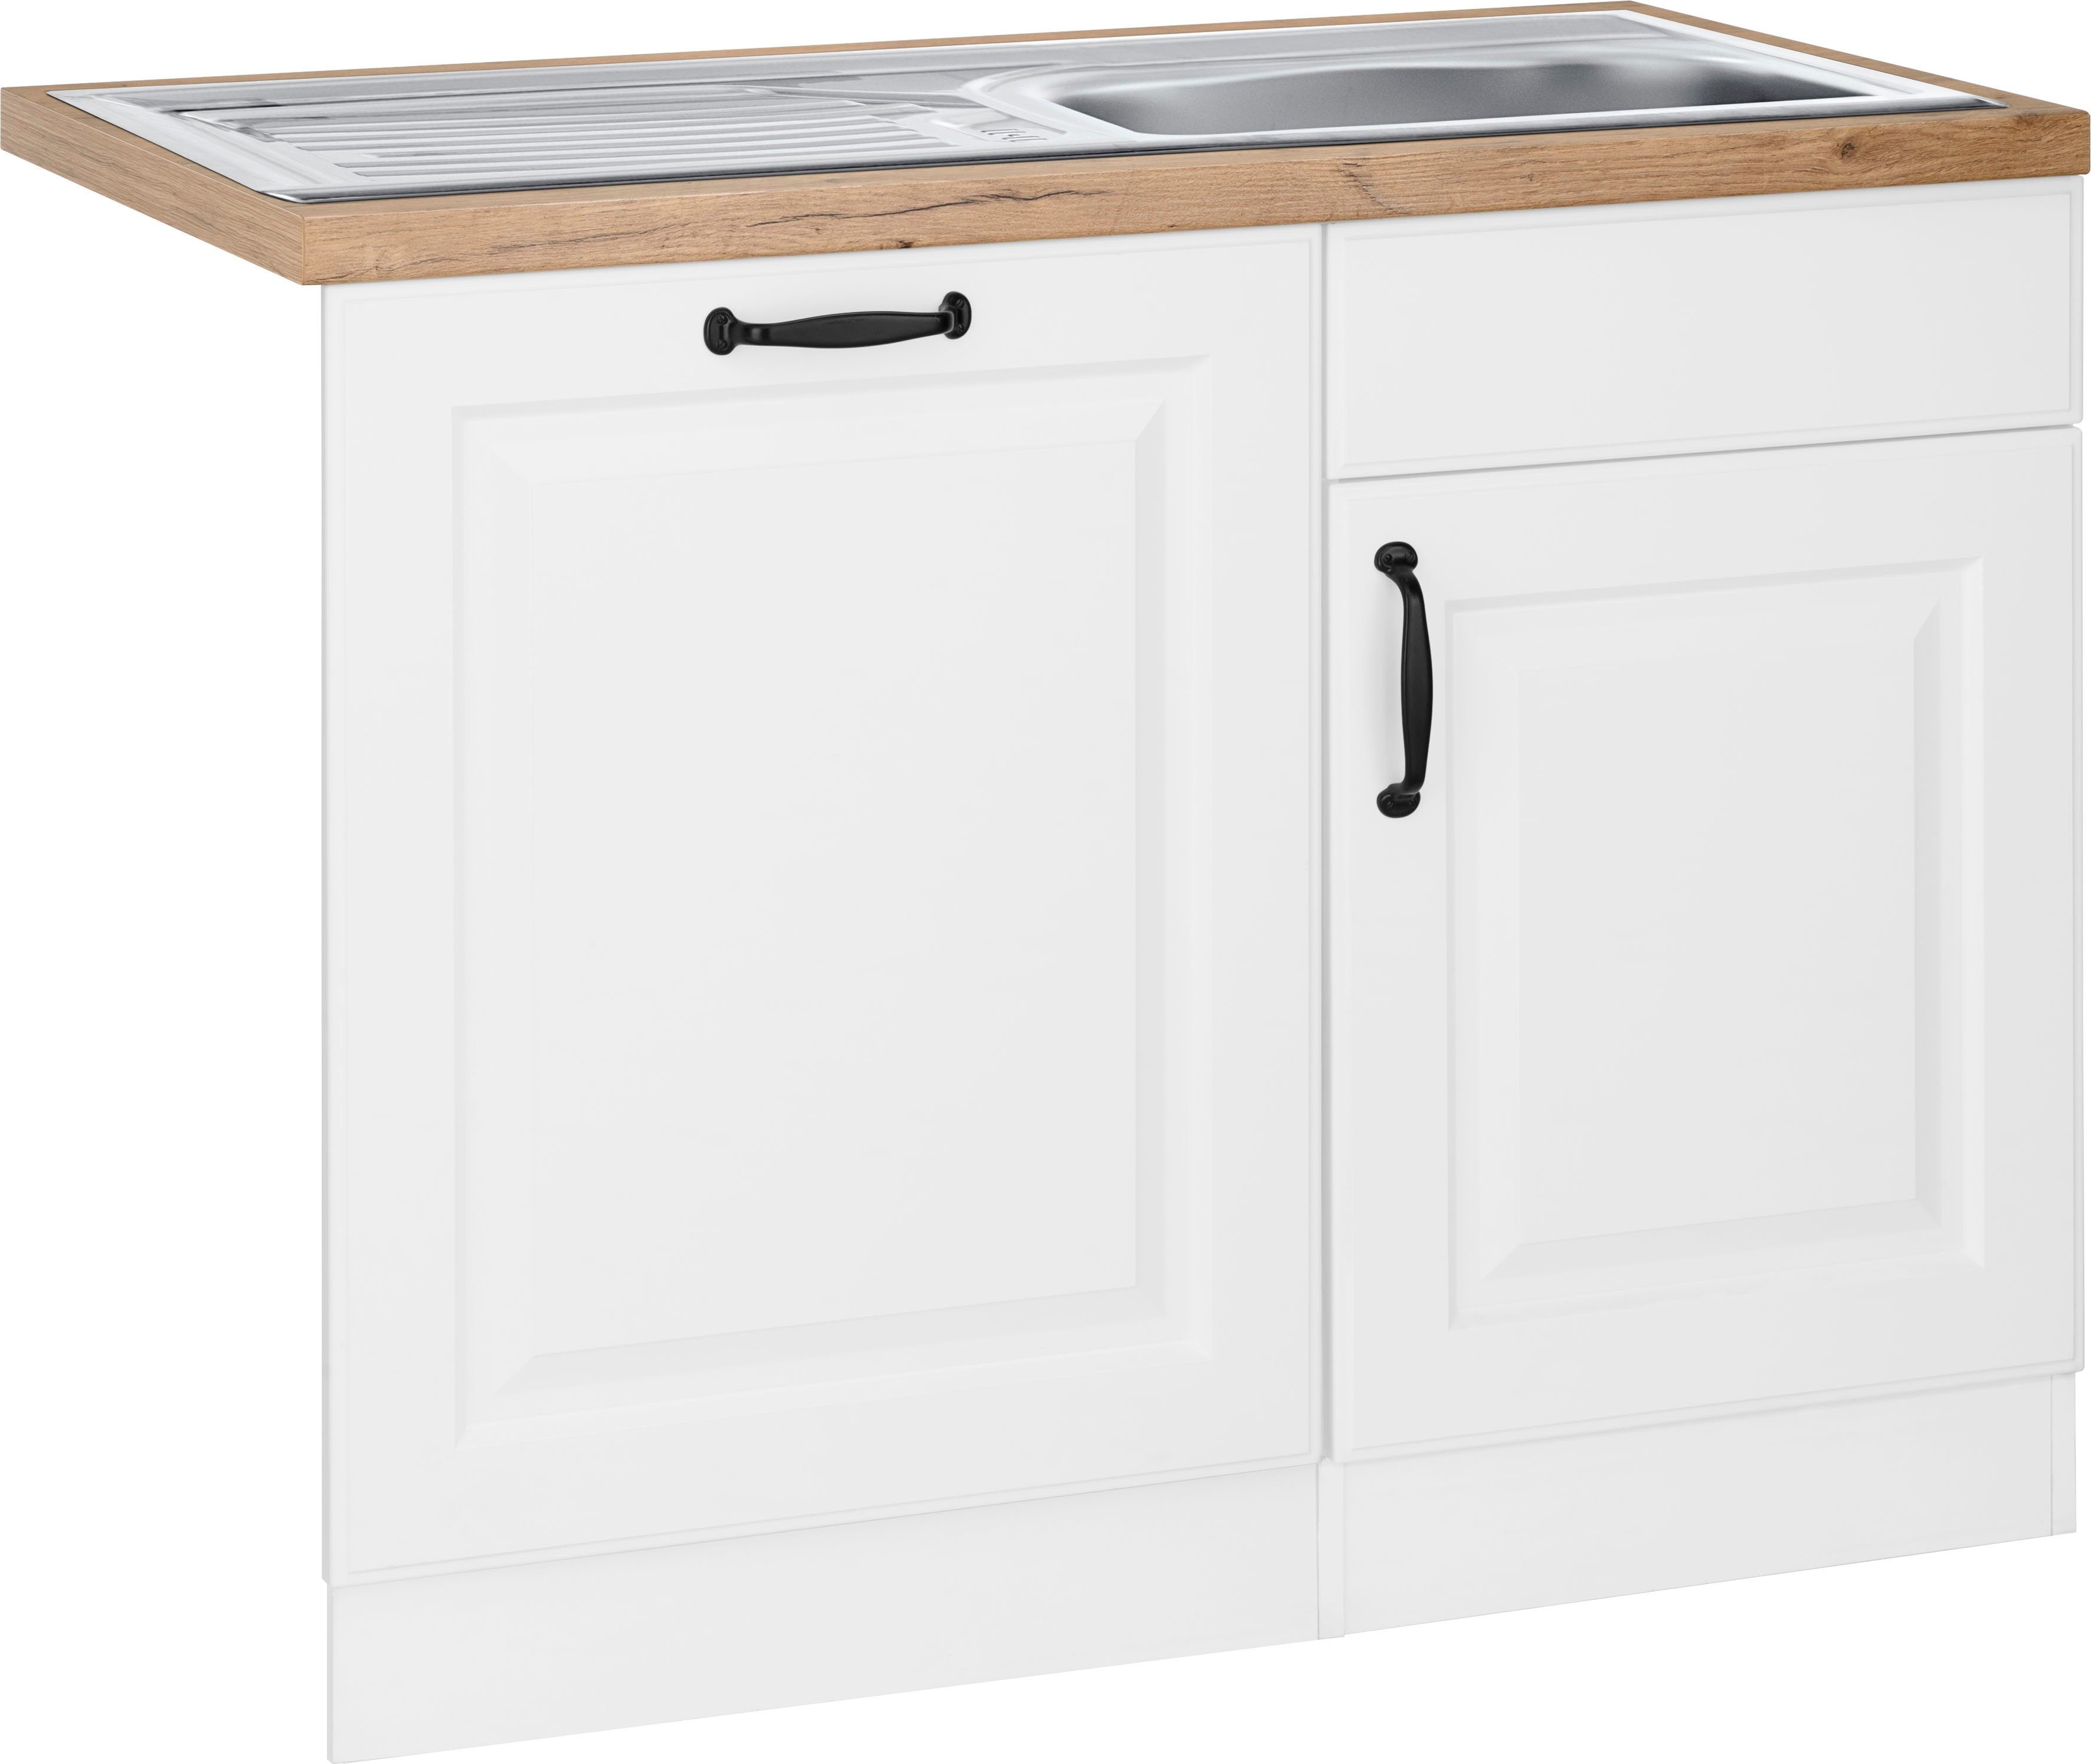 wiho Küchen Spülenschrank Erla 110 cm breit, inkl. Tür/Sockel für Geschirrspüler weiß/kastelleichefarben | weiß